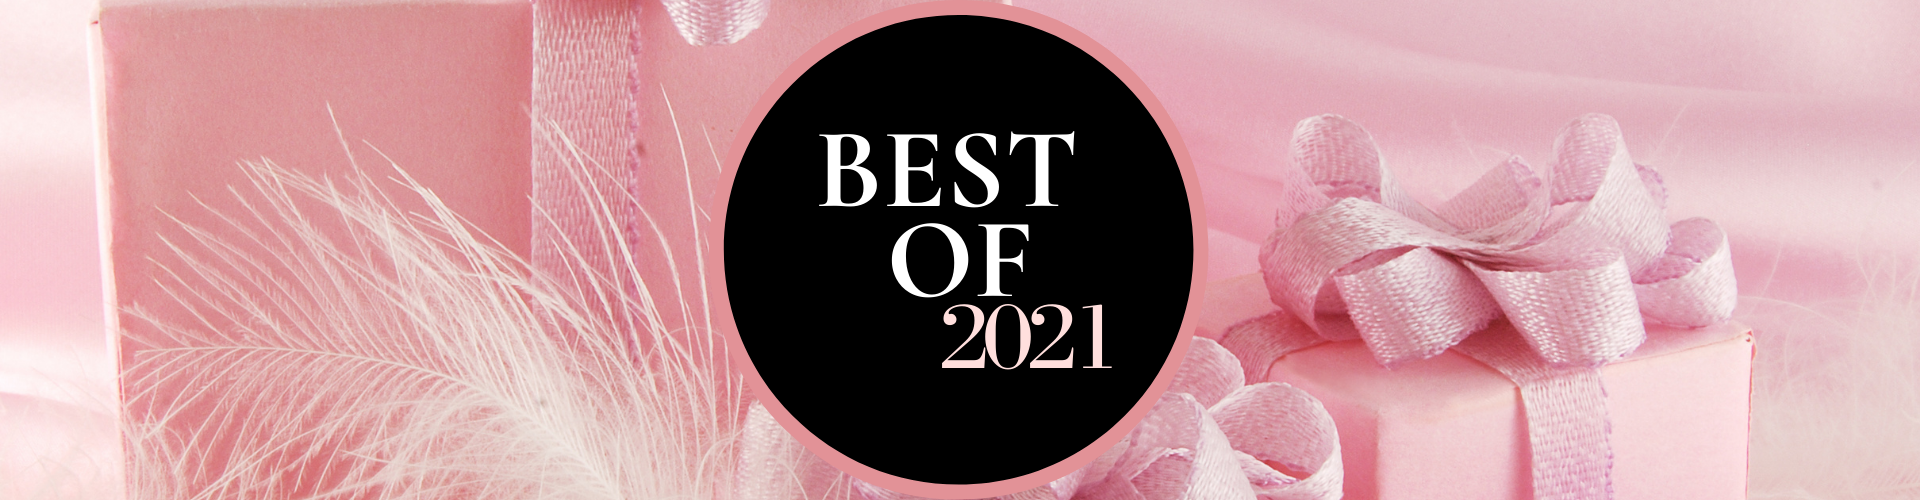 Best of 2021 - Header